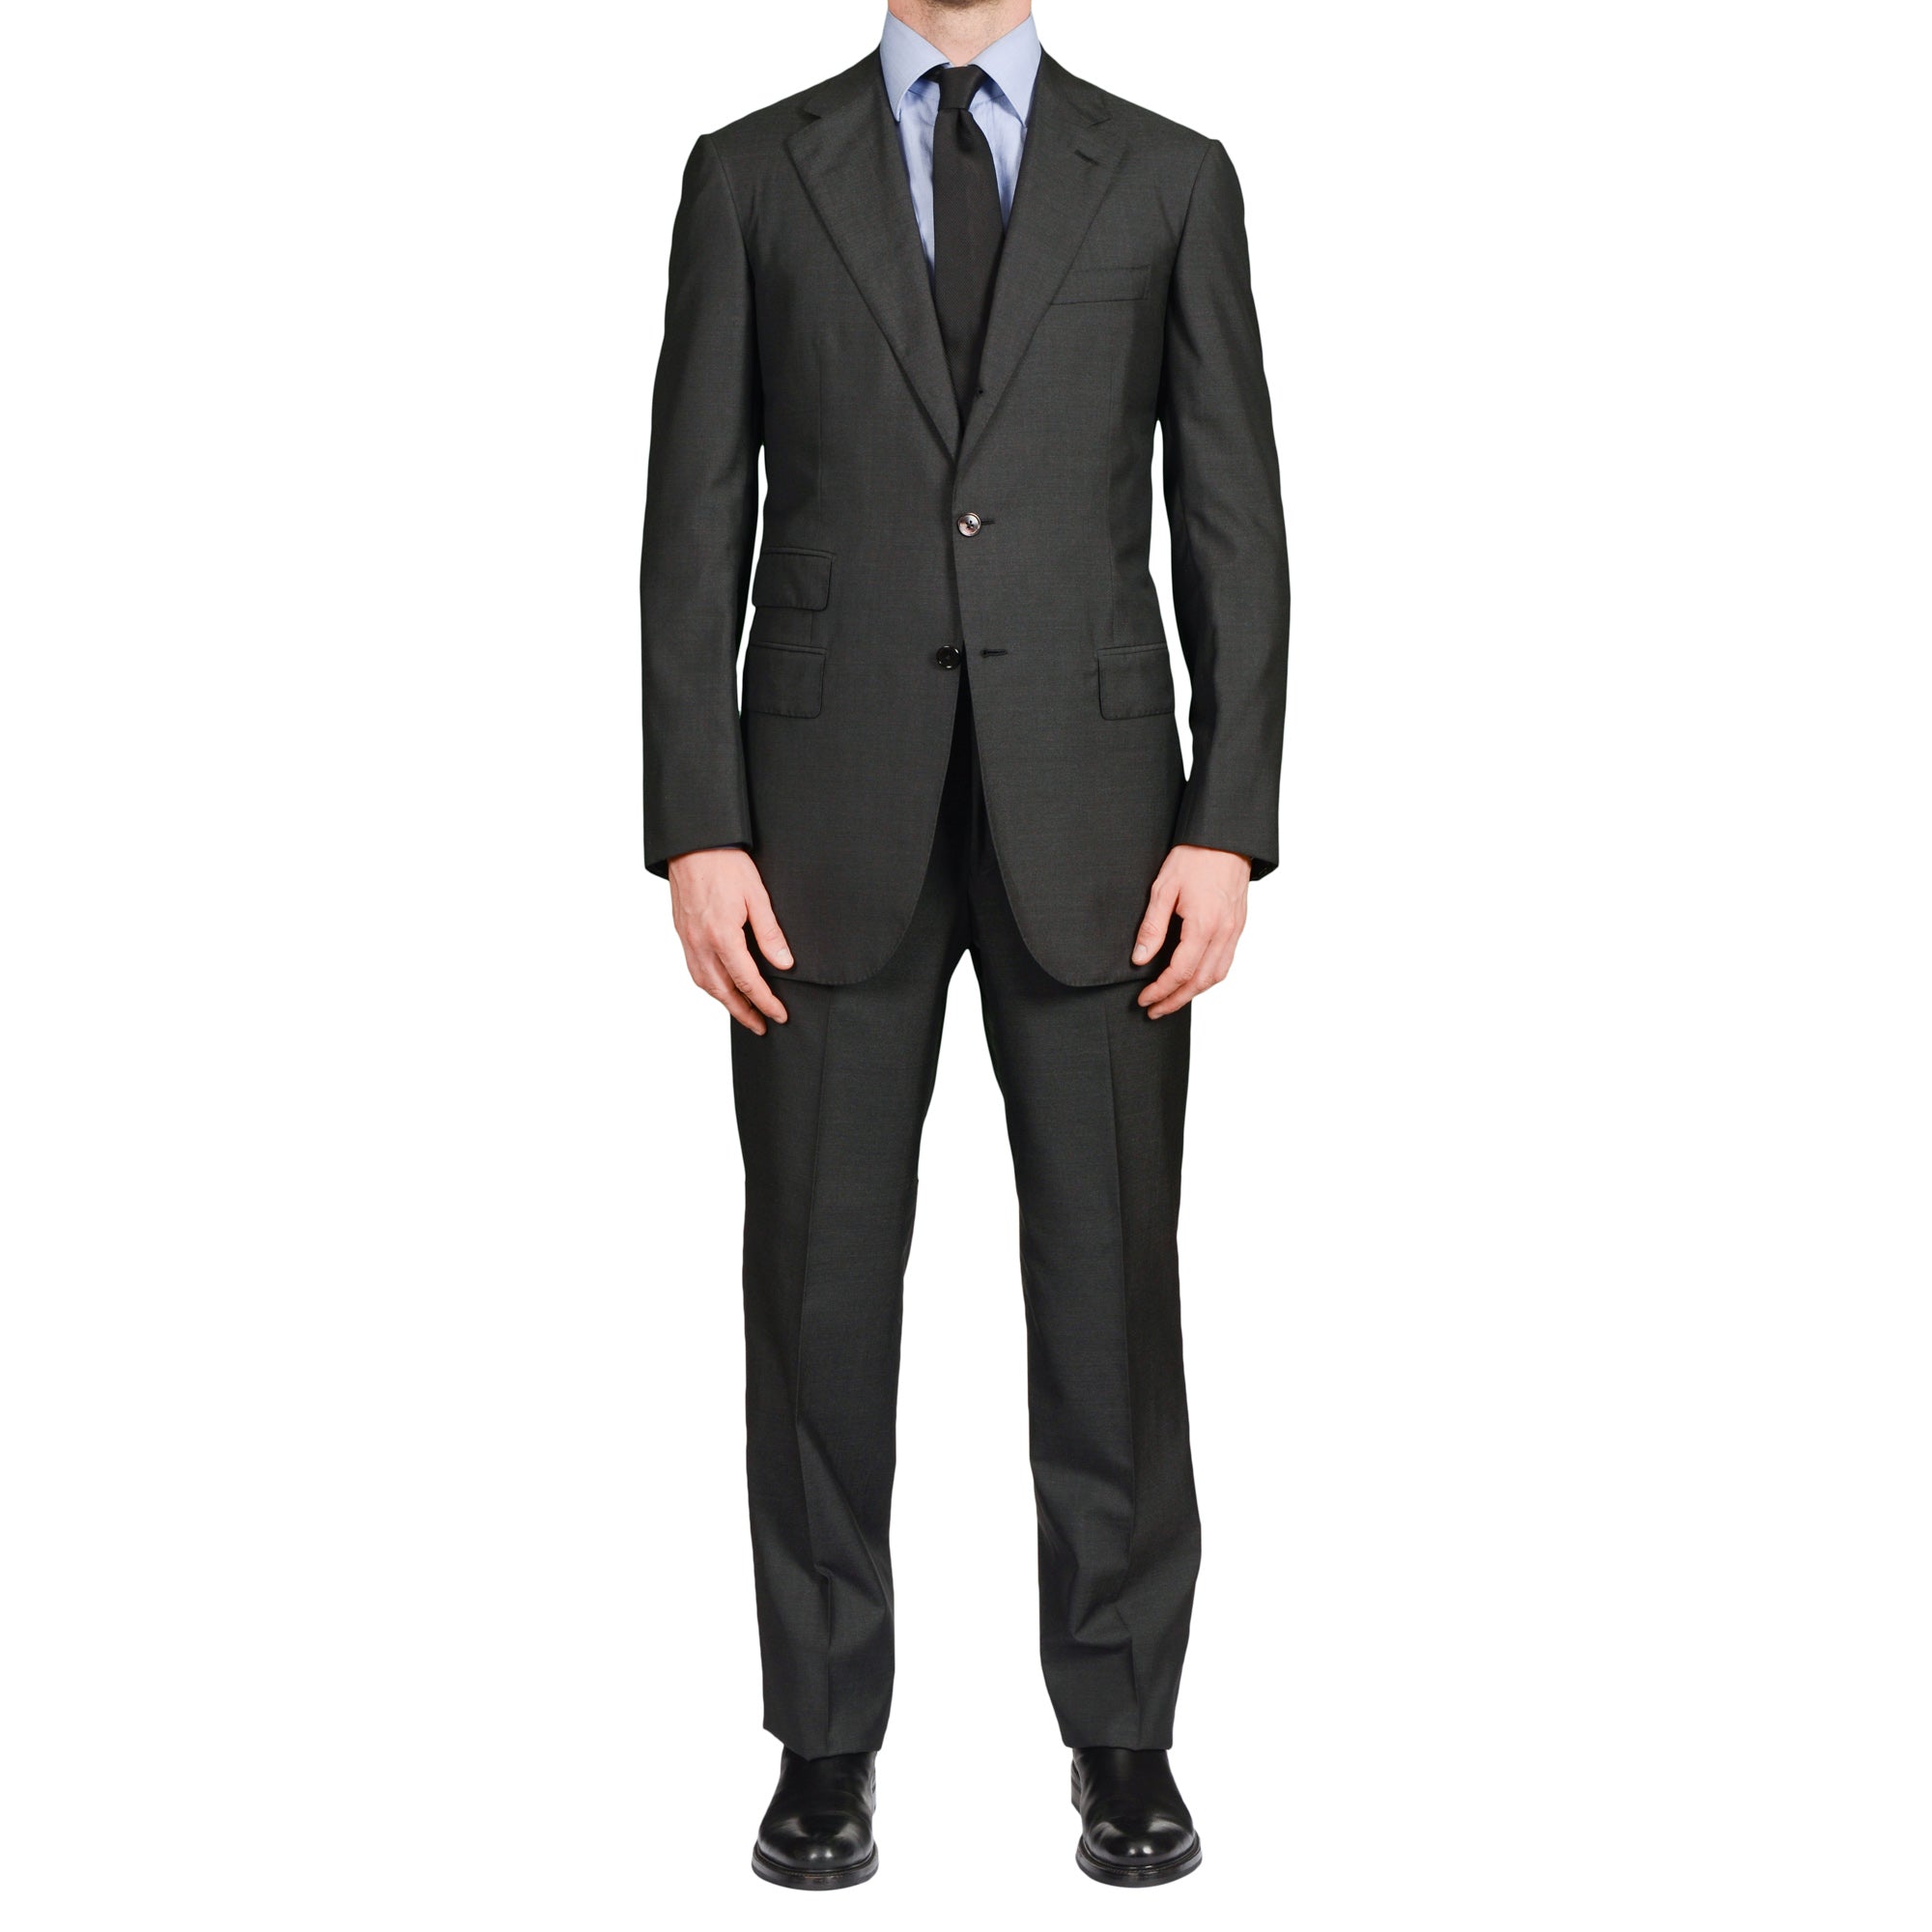 D'AVENZA for C. WIRSCHKE Handmade Gray Wool-Silk Suit EU 48 NEW US 38 Long